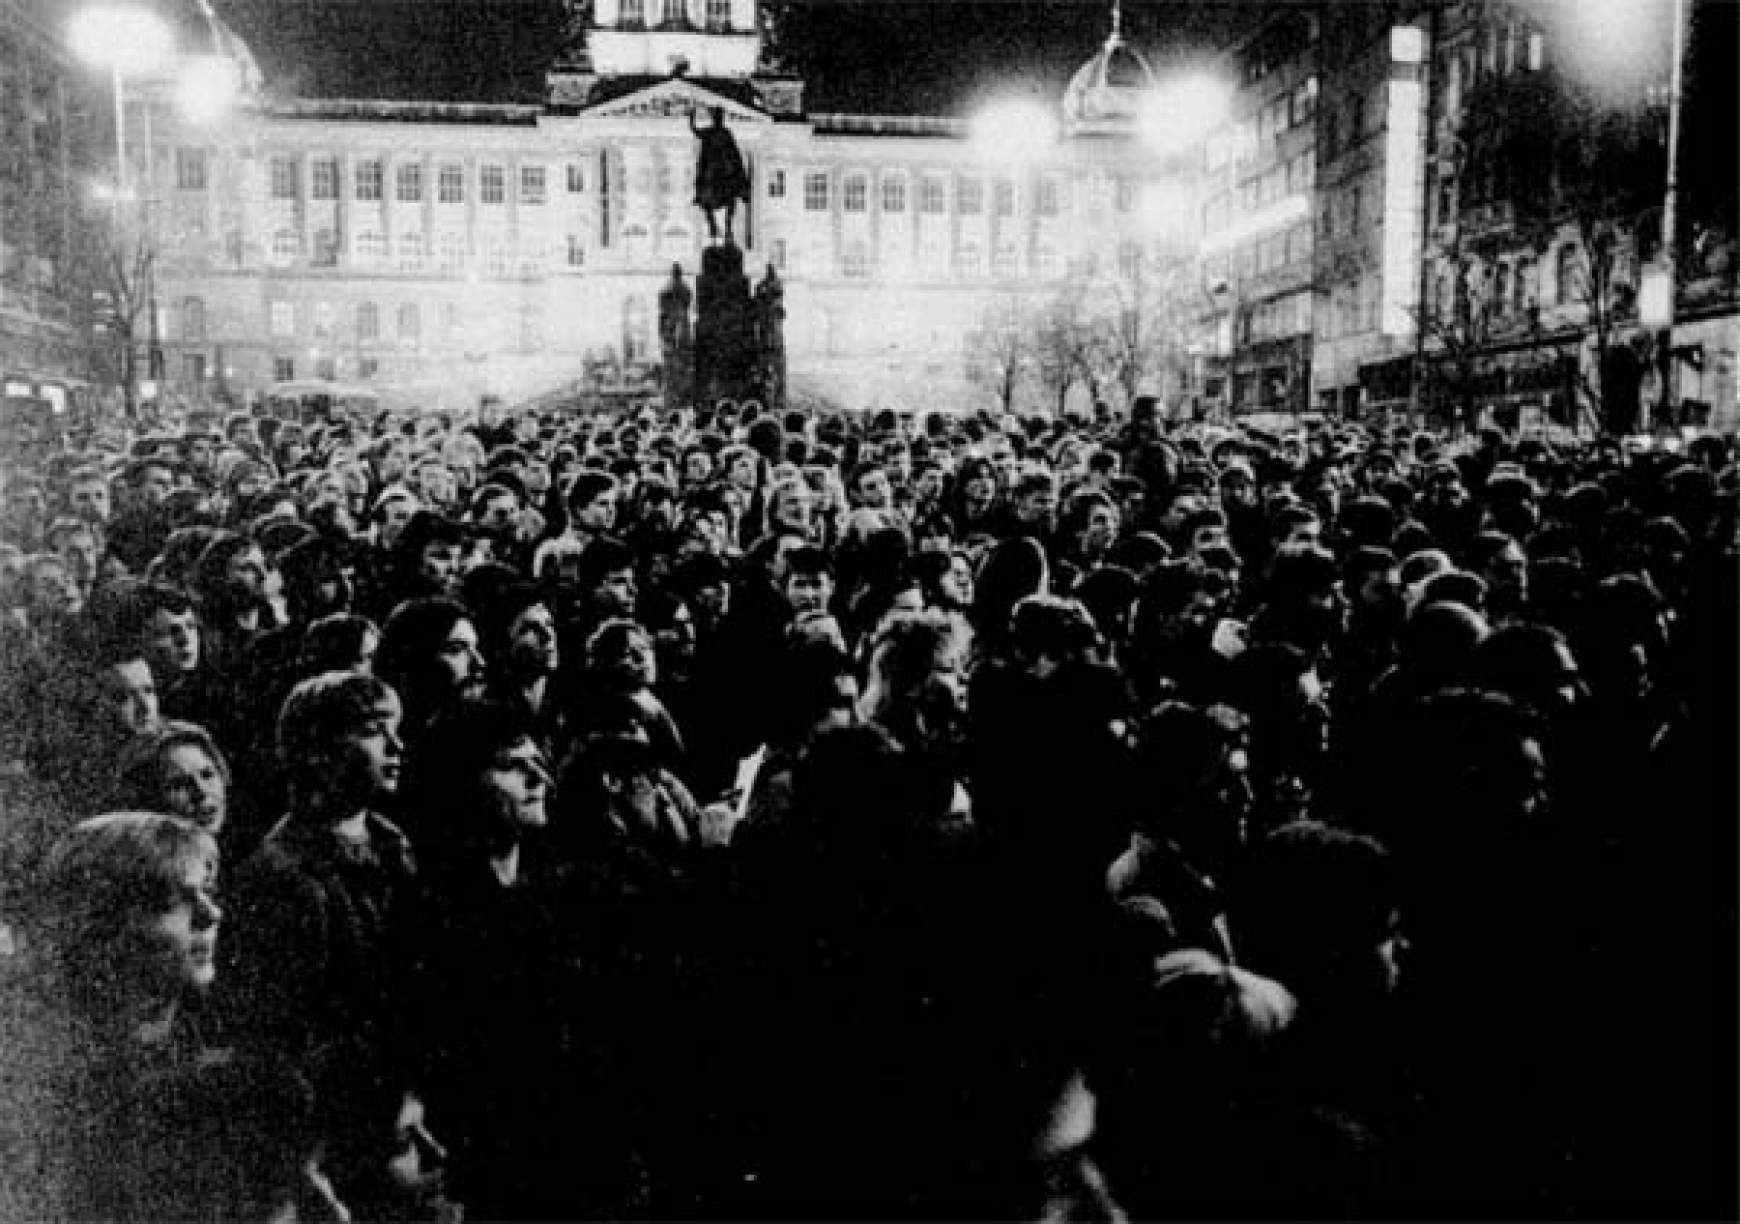 Pillanatkép az 1989-es Prágában elkezdődött bársonyos forradalomból, ami végül a kommunista rendszer bukásához vezetett